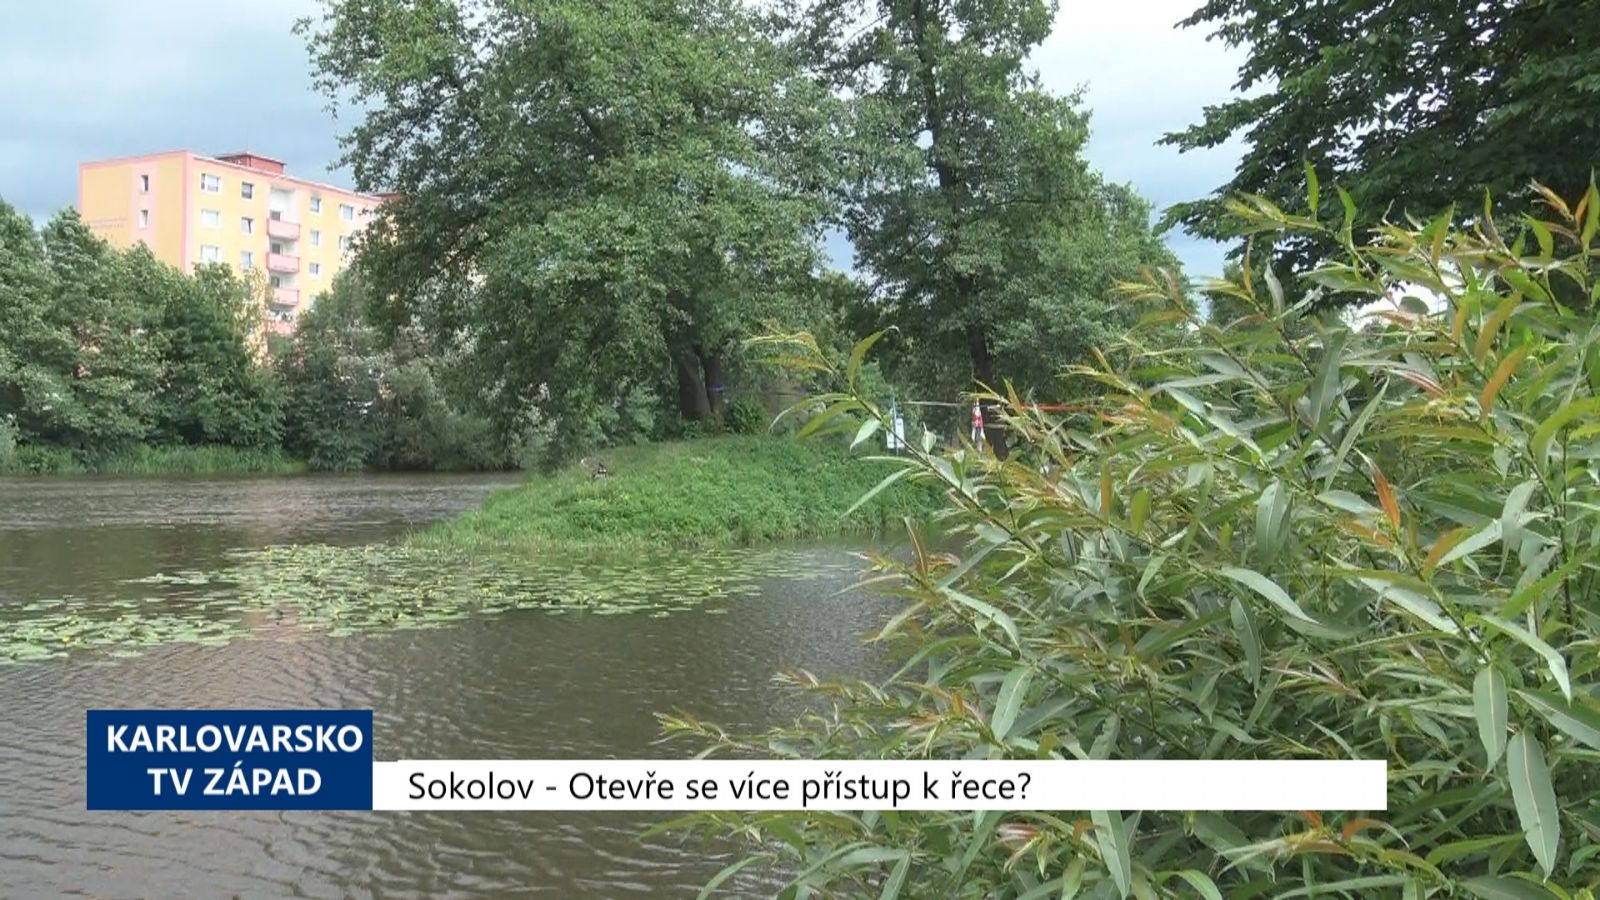 Sokolov: Otevře se více přístup k řece? (TV Západ)